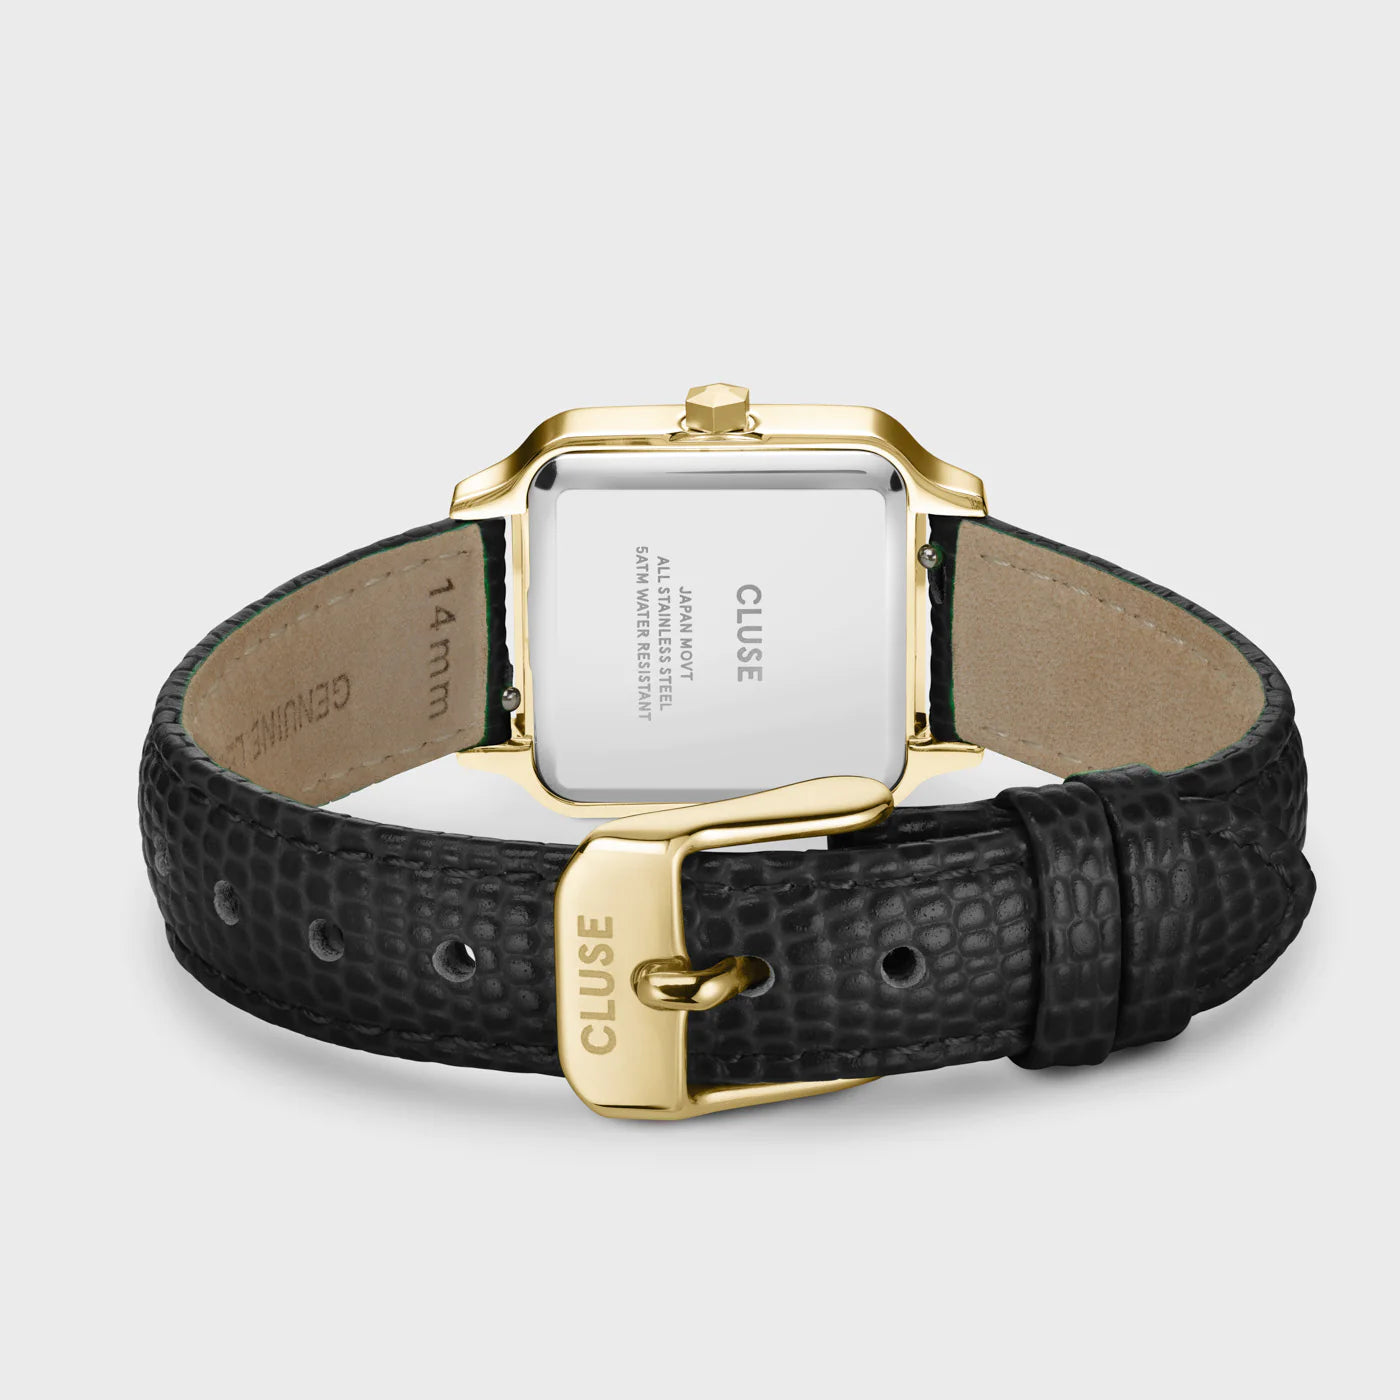 Gehäußeboden und schwarzes Lederband im Echsen-Look der Cluse Stahl-Uhr "Gracieuse Petite" mit einem gelbgold-farbenem Gehäuse